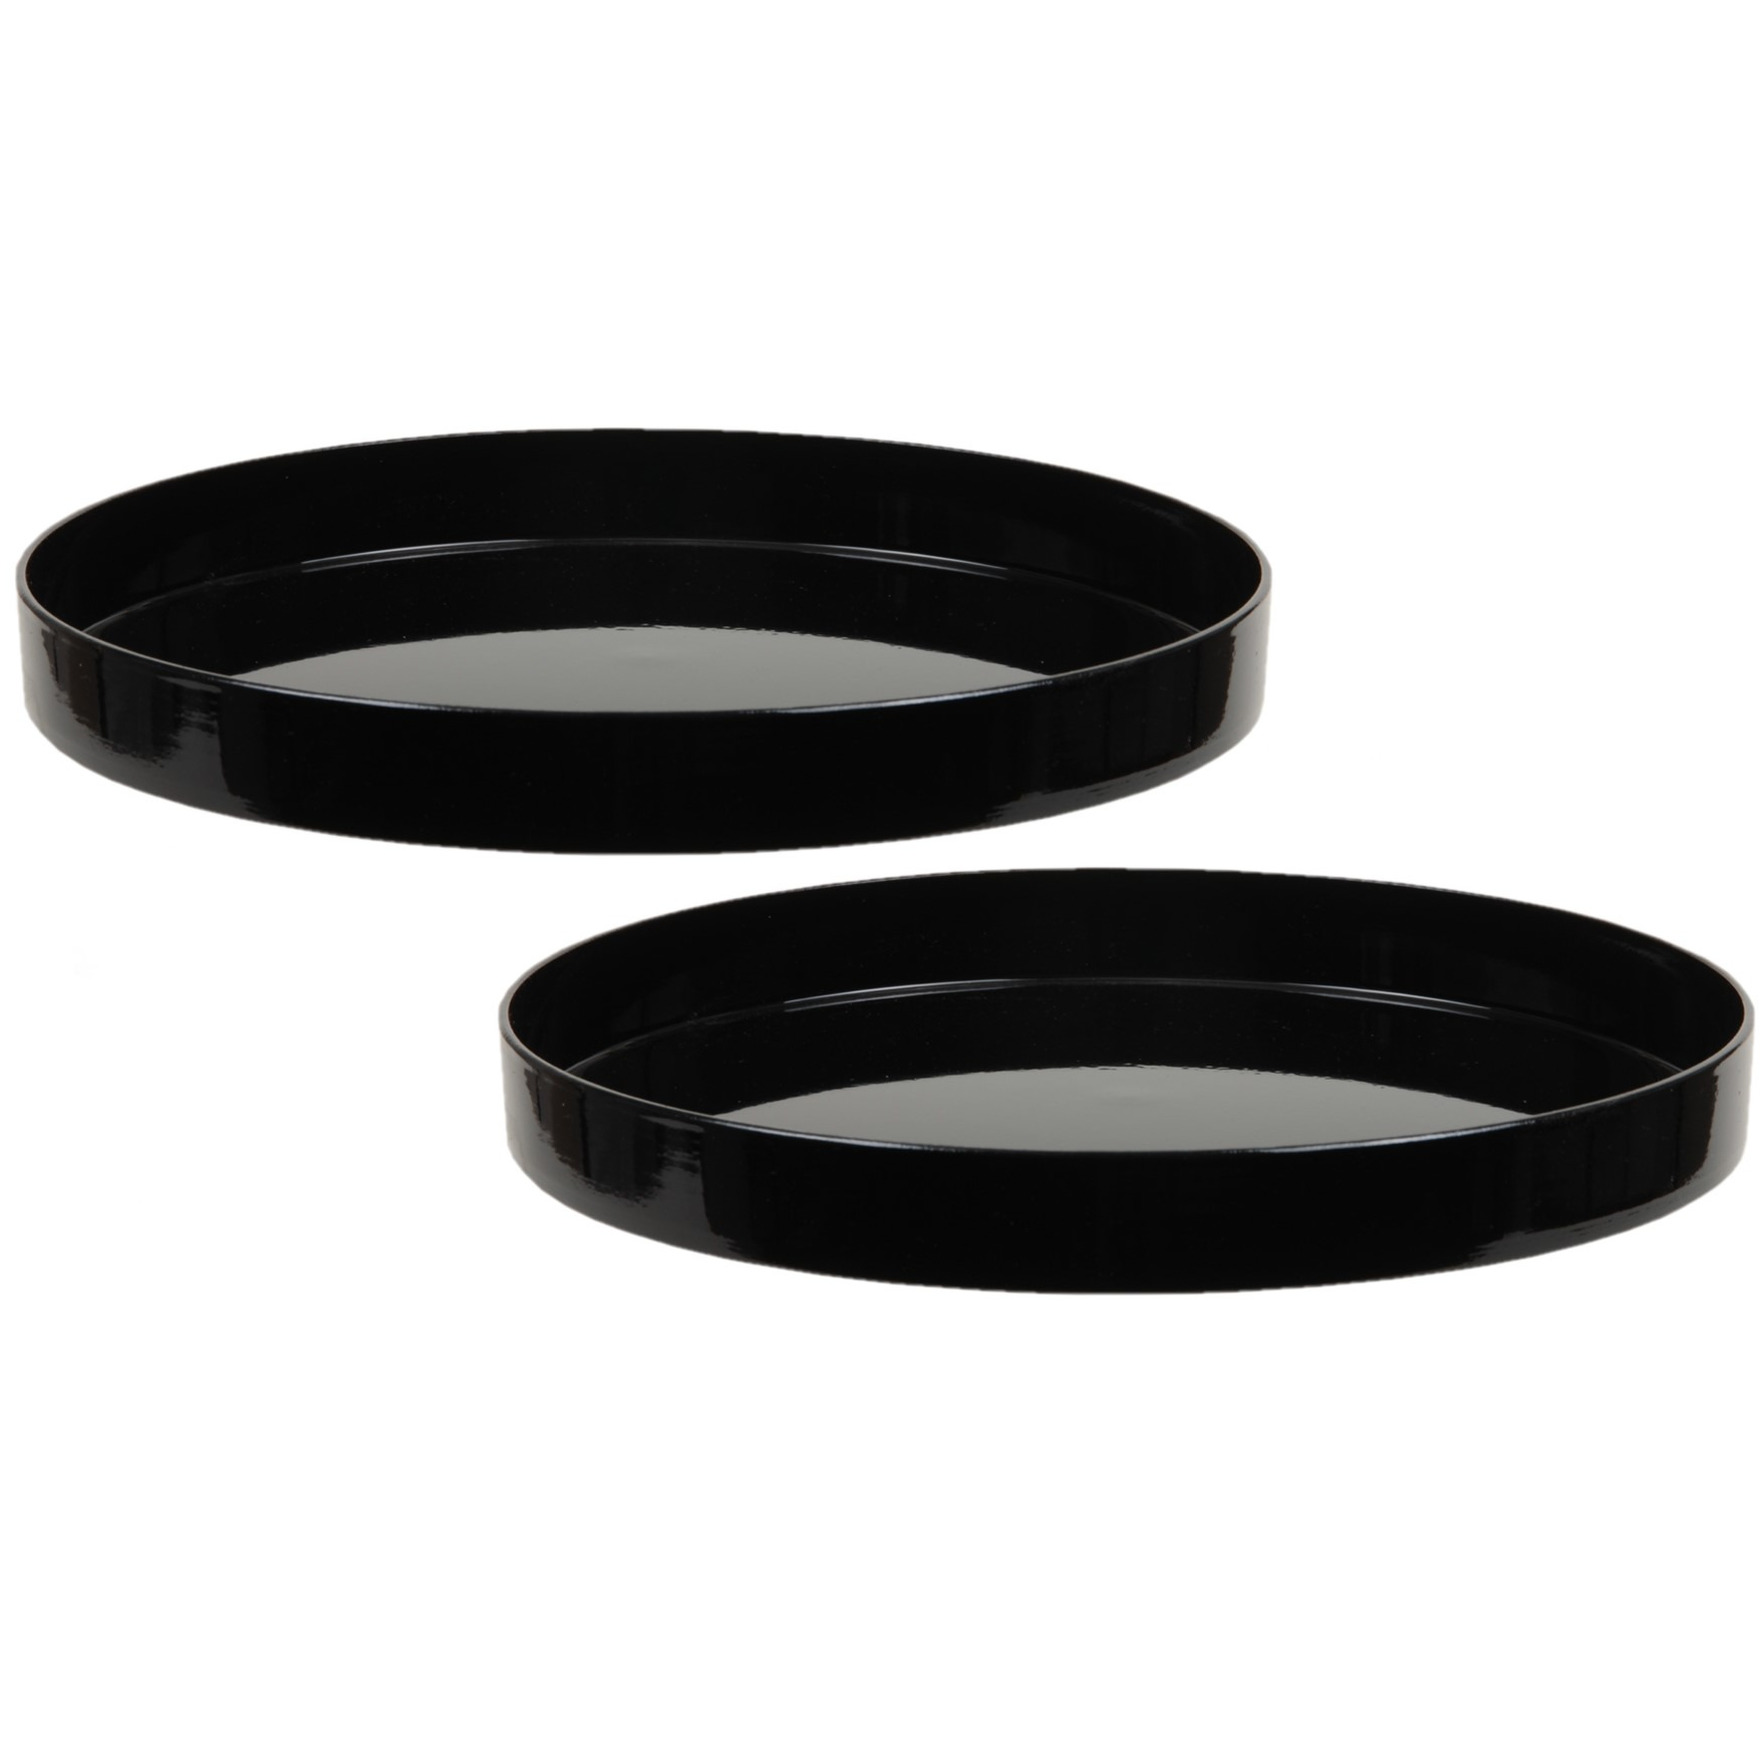 Merkloos 2x stuks ronde kunststof dienbladen/kaarsenplateaus zwart D27 cm -